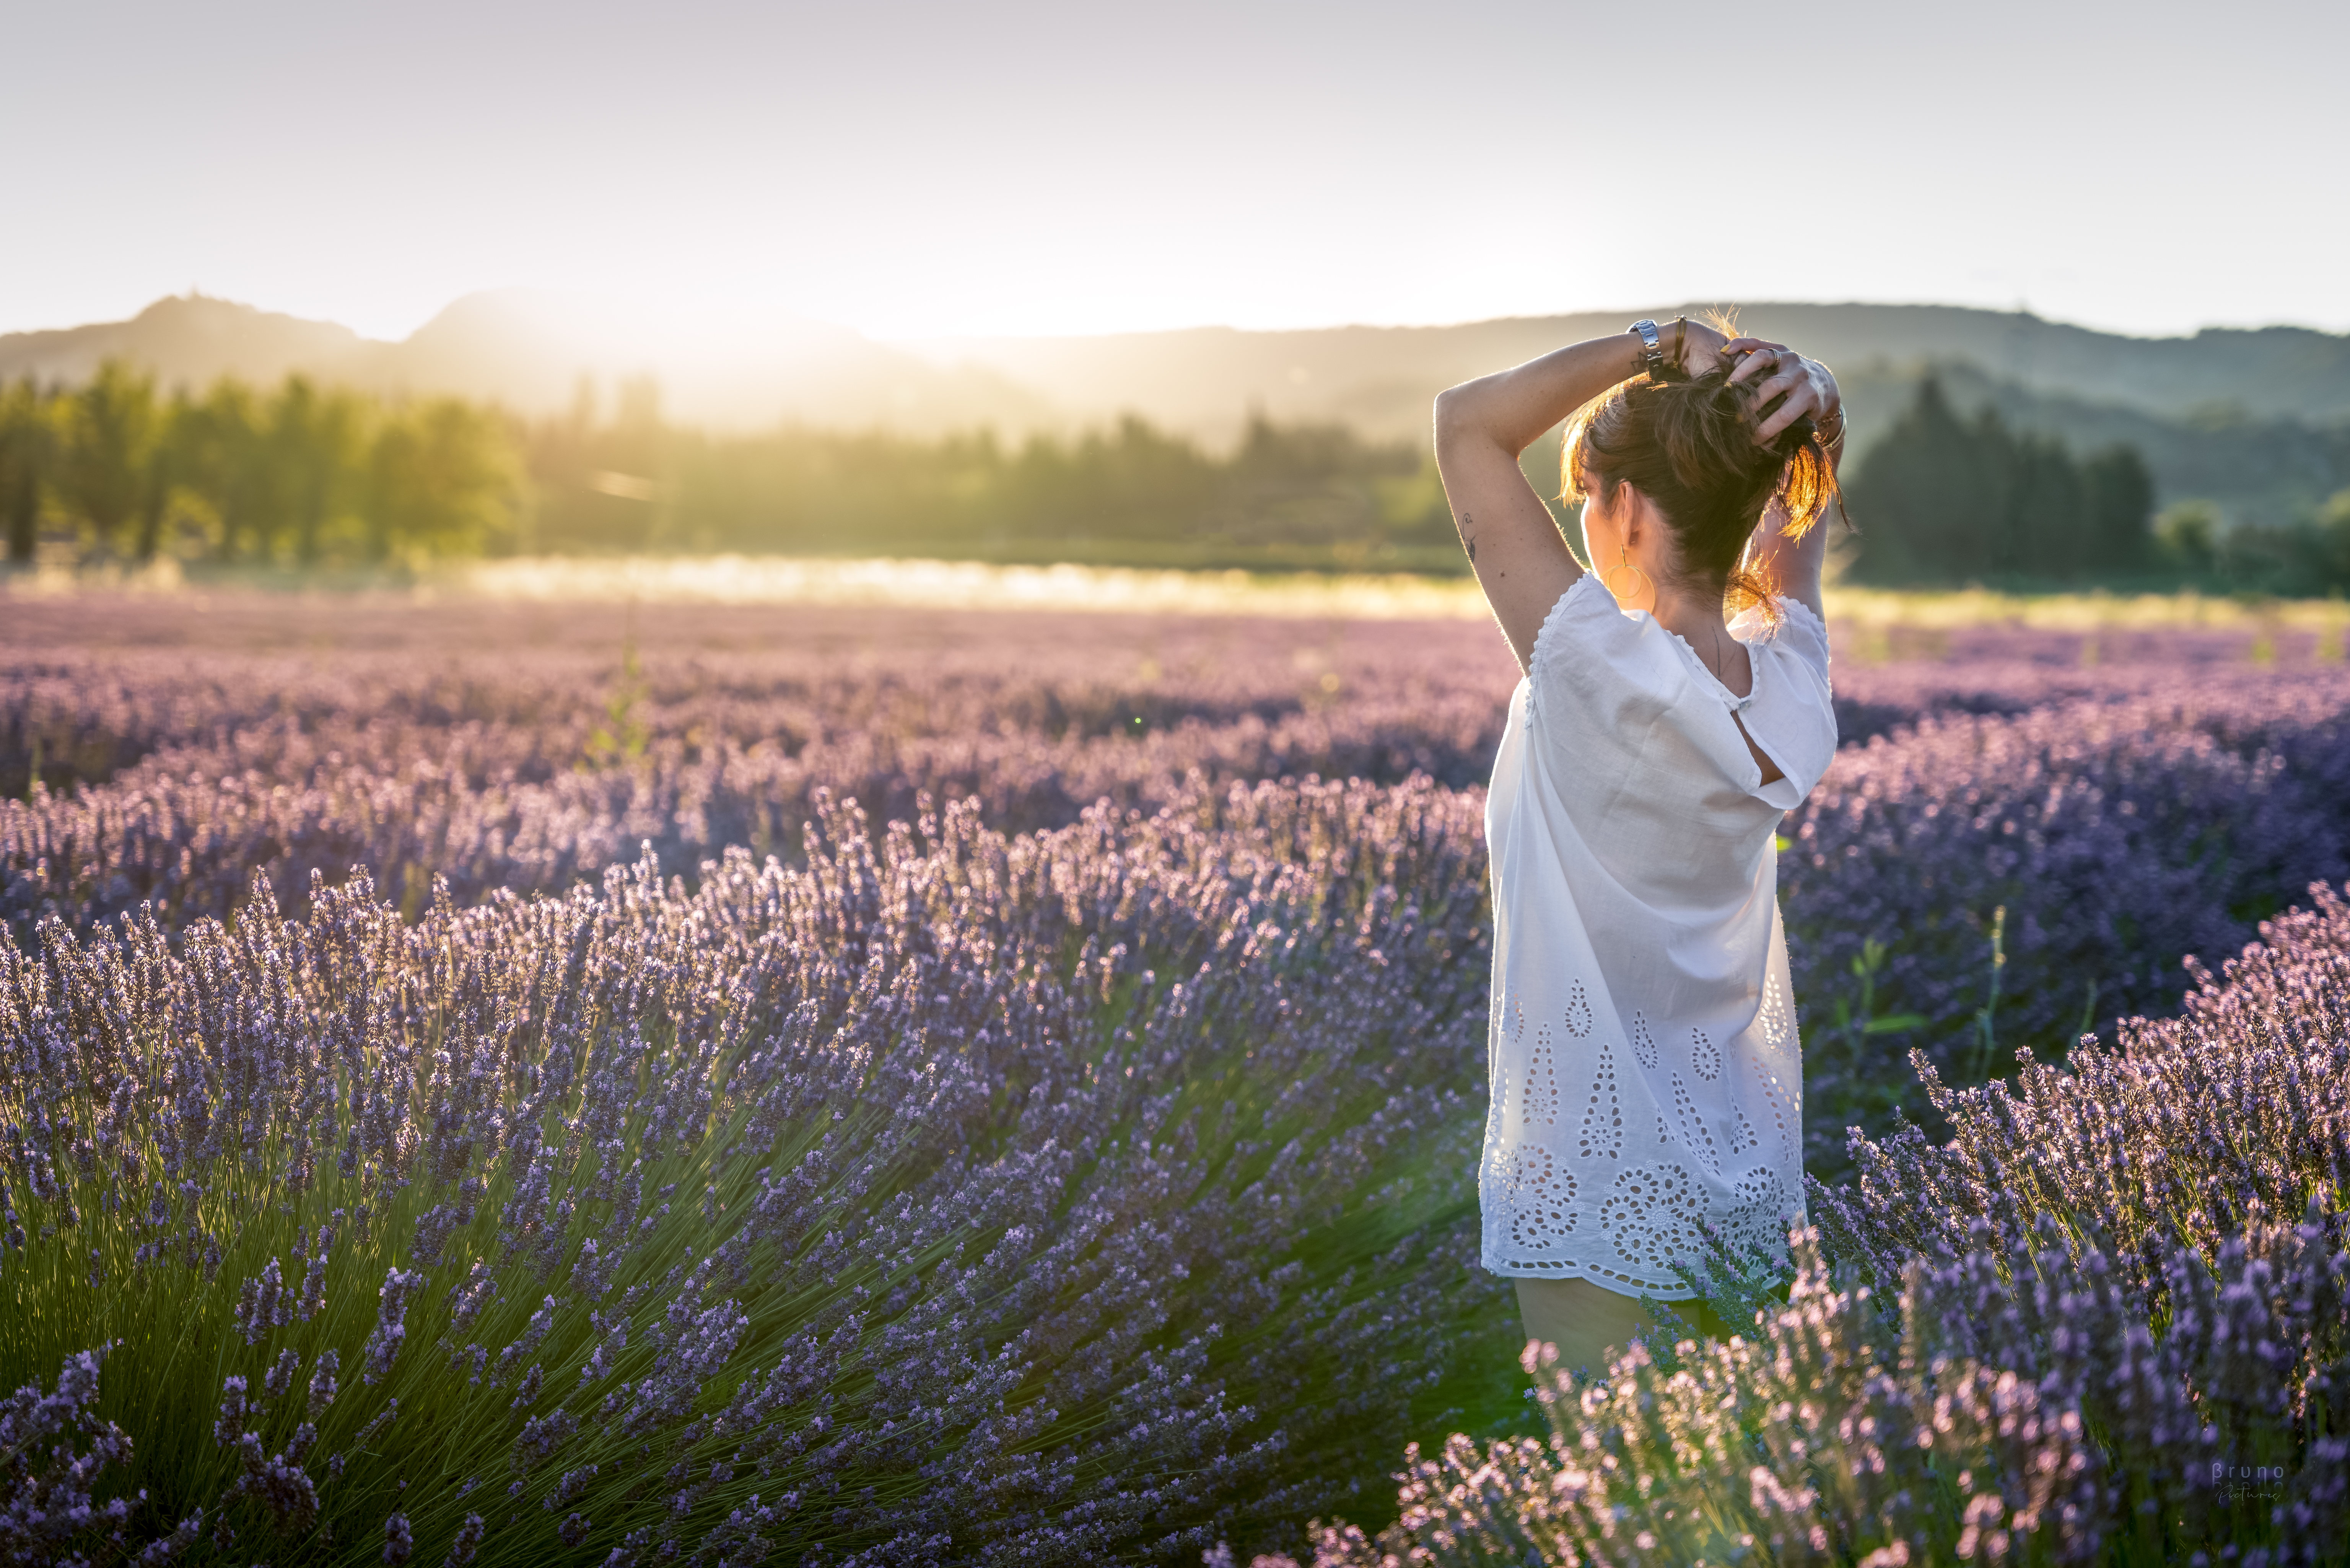 People 6144x4100 field women model sian sunlight nature landscape hands in hair lavender depth of field